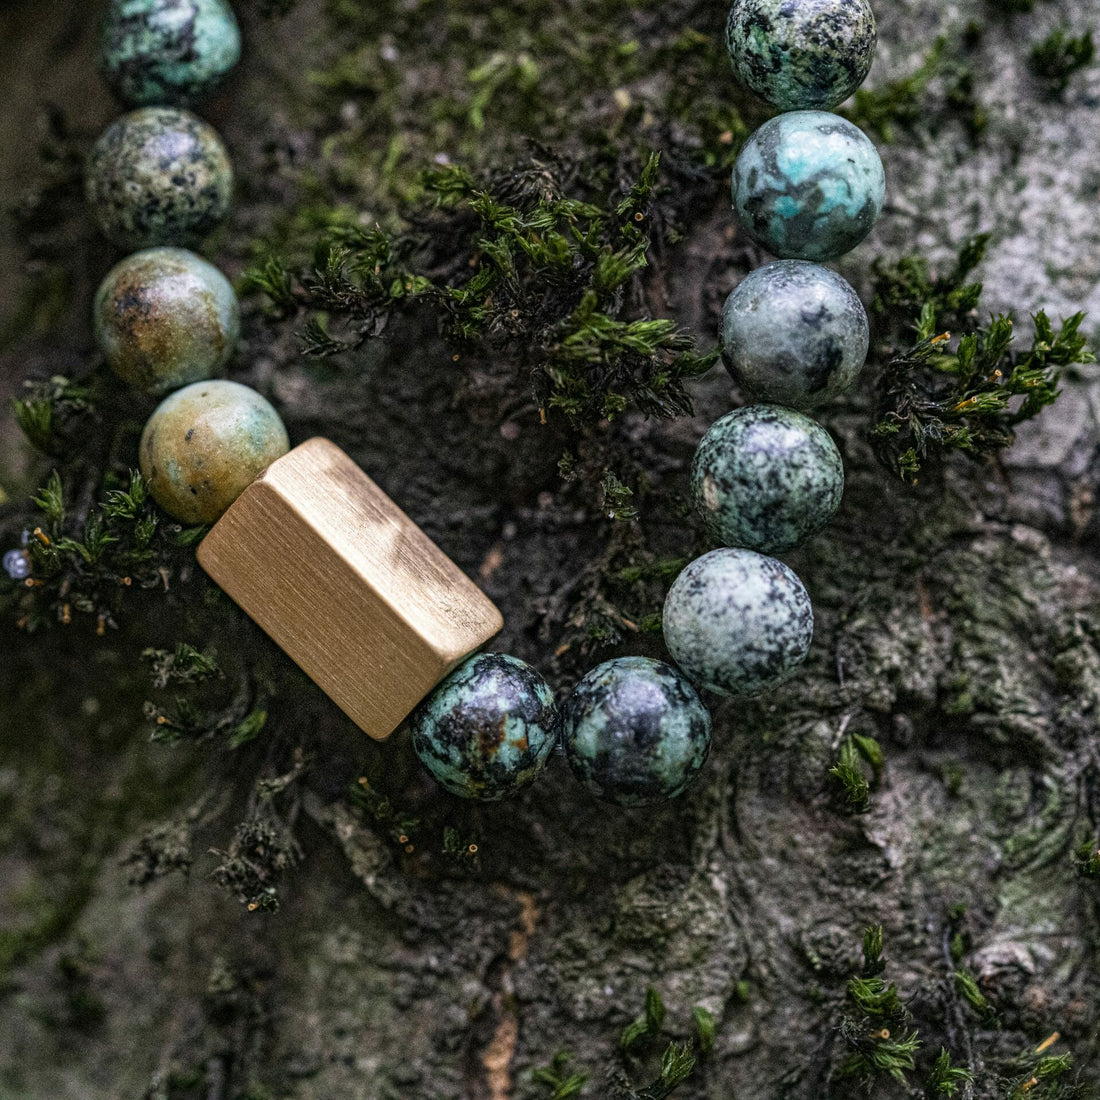 Afrikaanse Turquoise Goudkleurige kralen armband